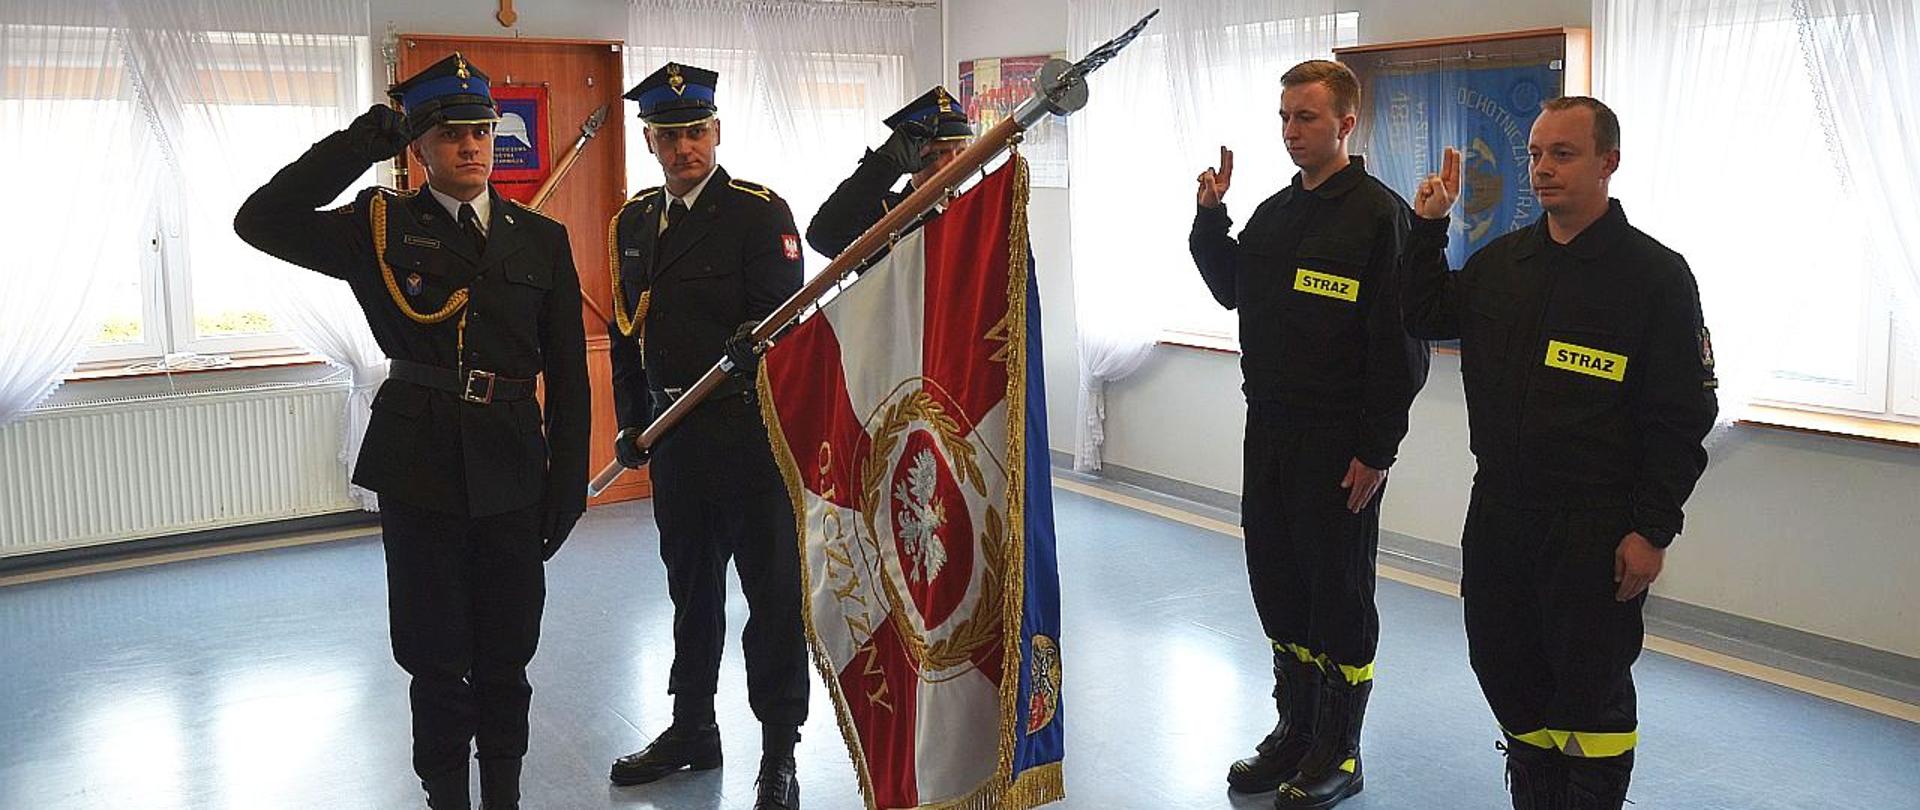 Na zdjęciu widać 2 strażaków ślubujących na sztandar Komendy, poczet sztandarowy